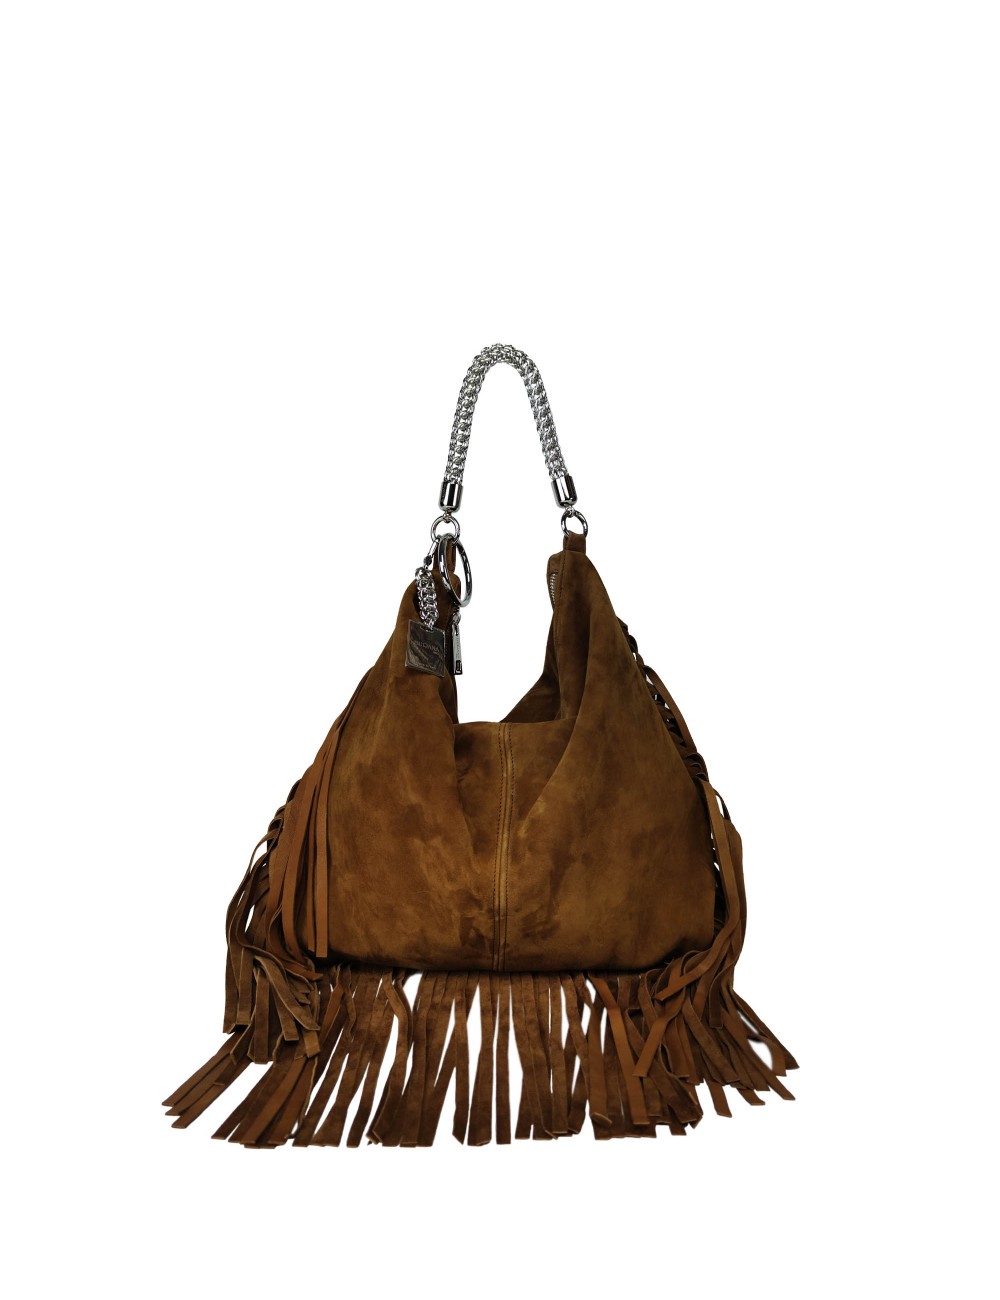 Ewa Large Handbag with Suede Fringes - Leather